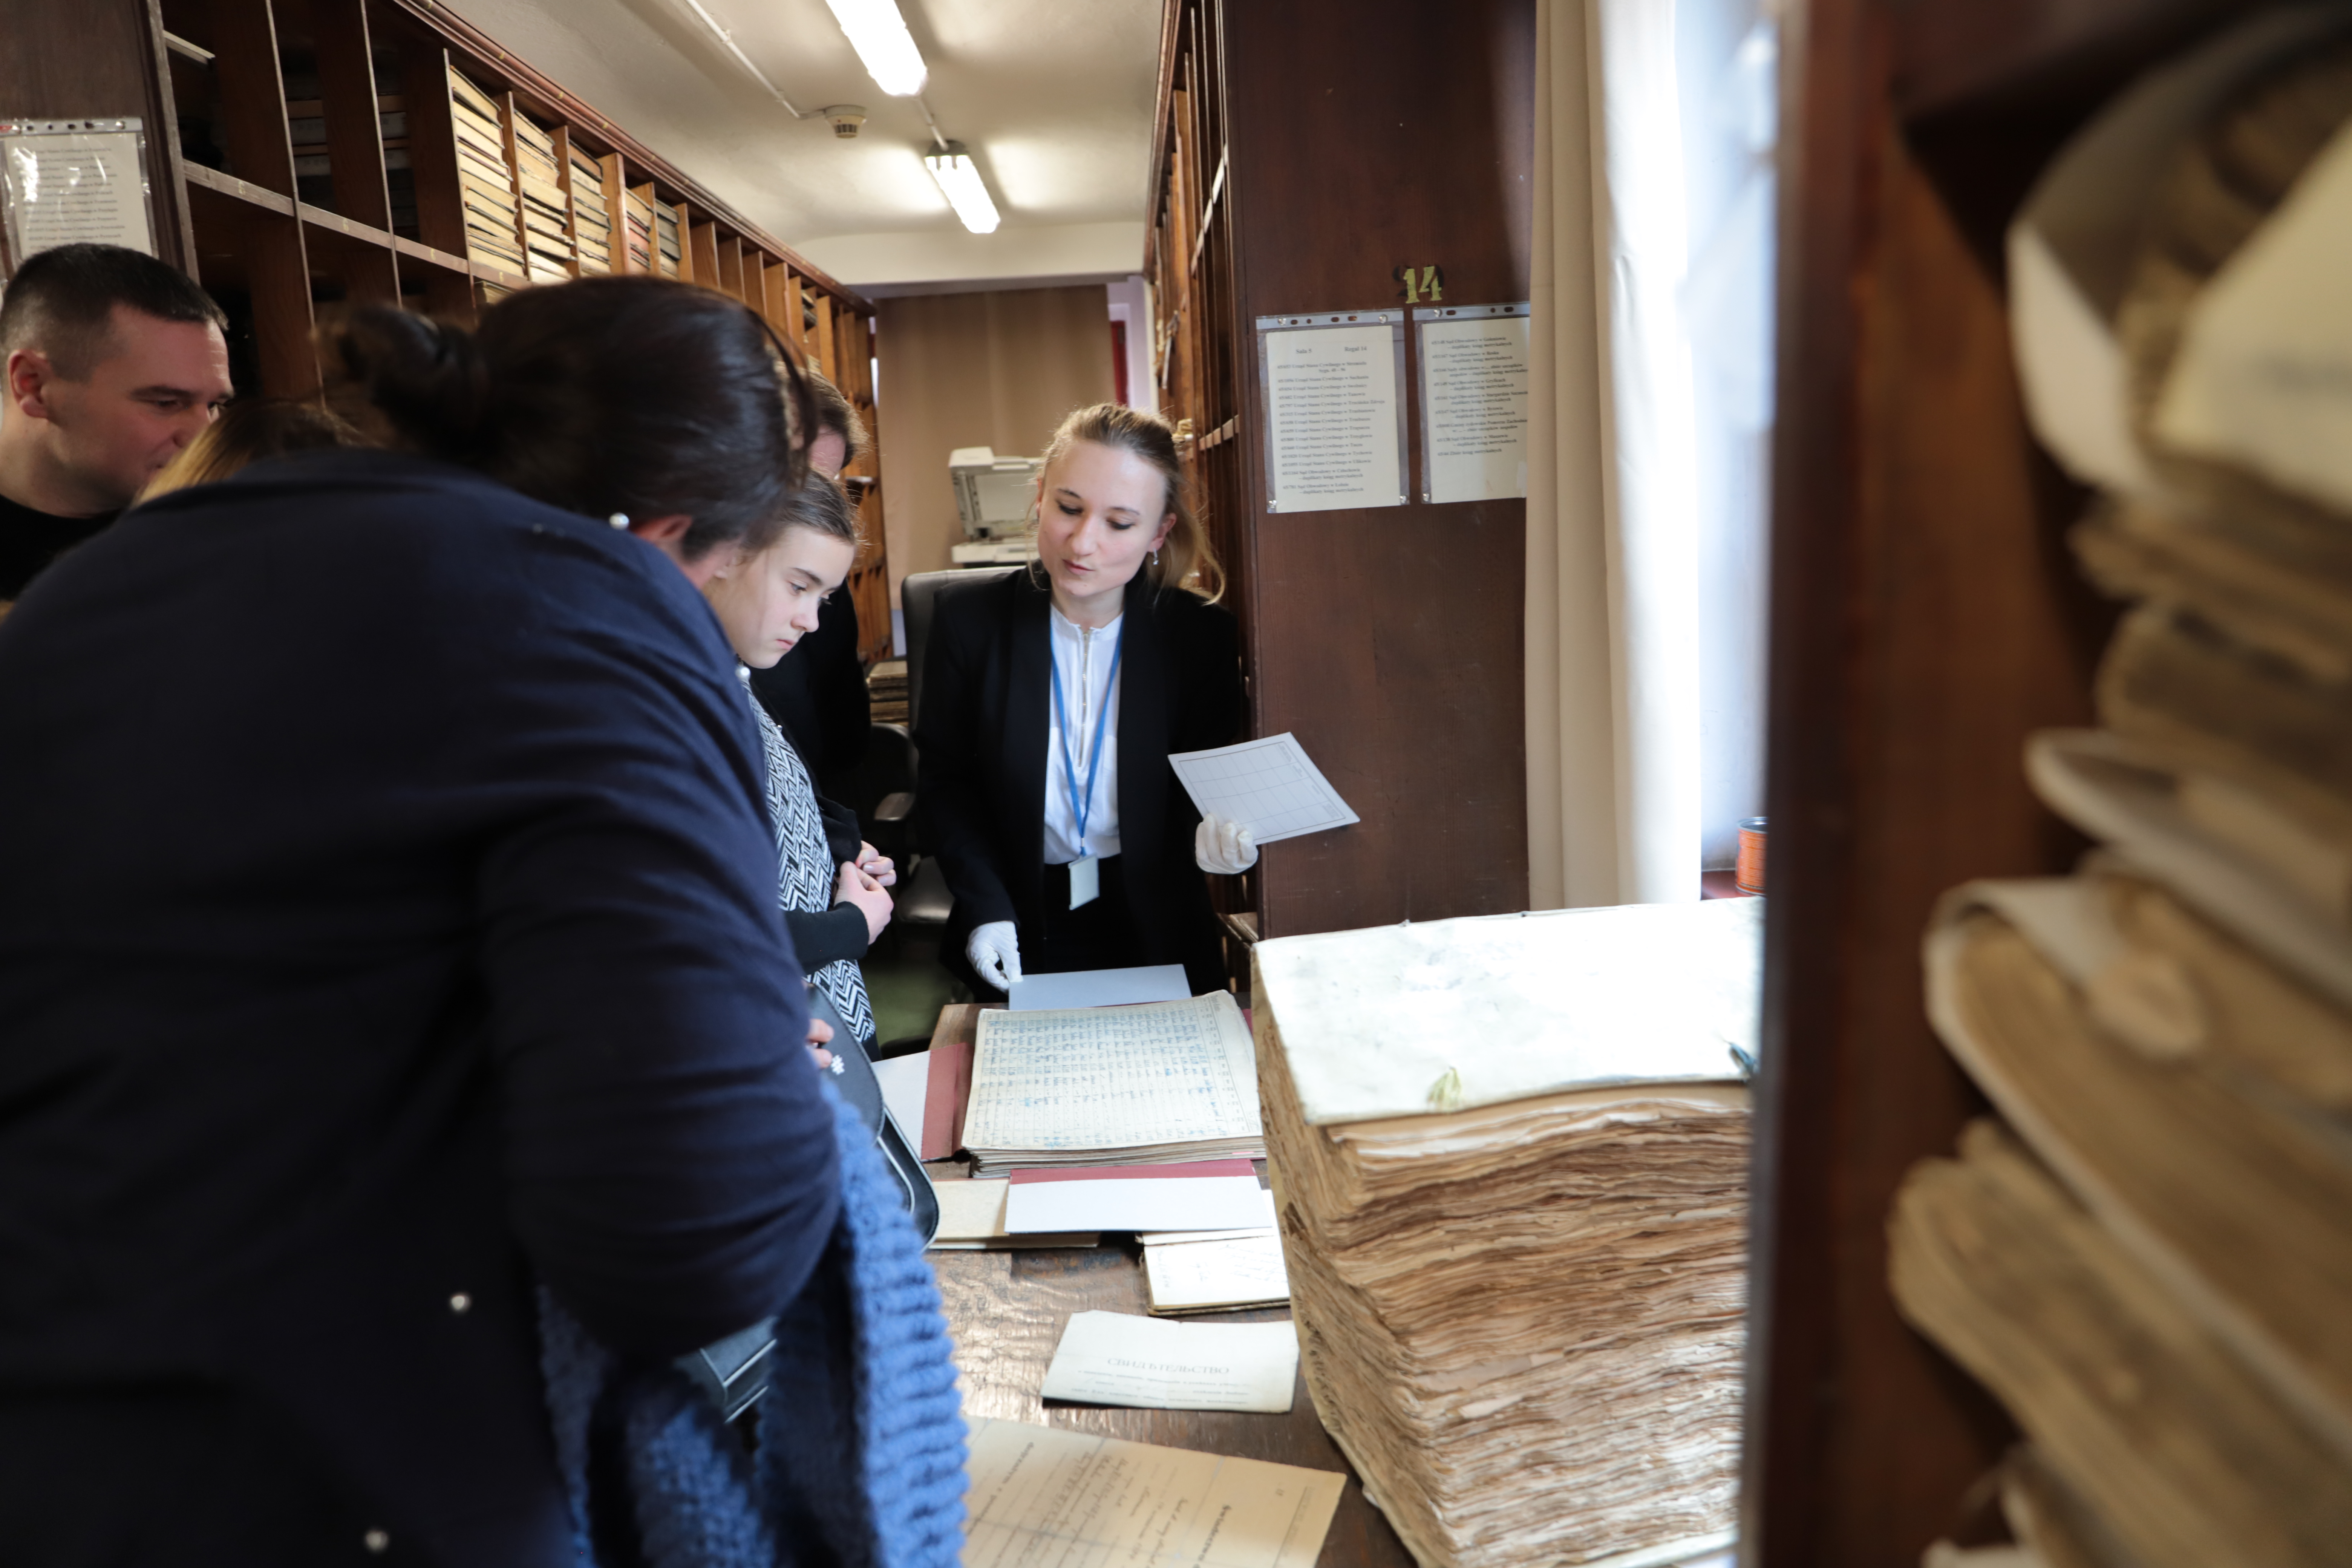 Archiwistka pokazuje gościom materiały archiwalne przechowywane w magazynie. 